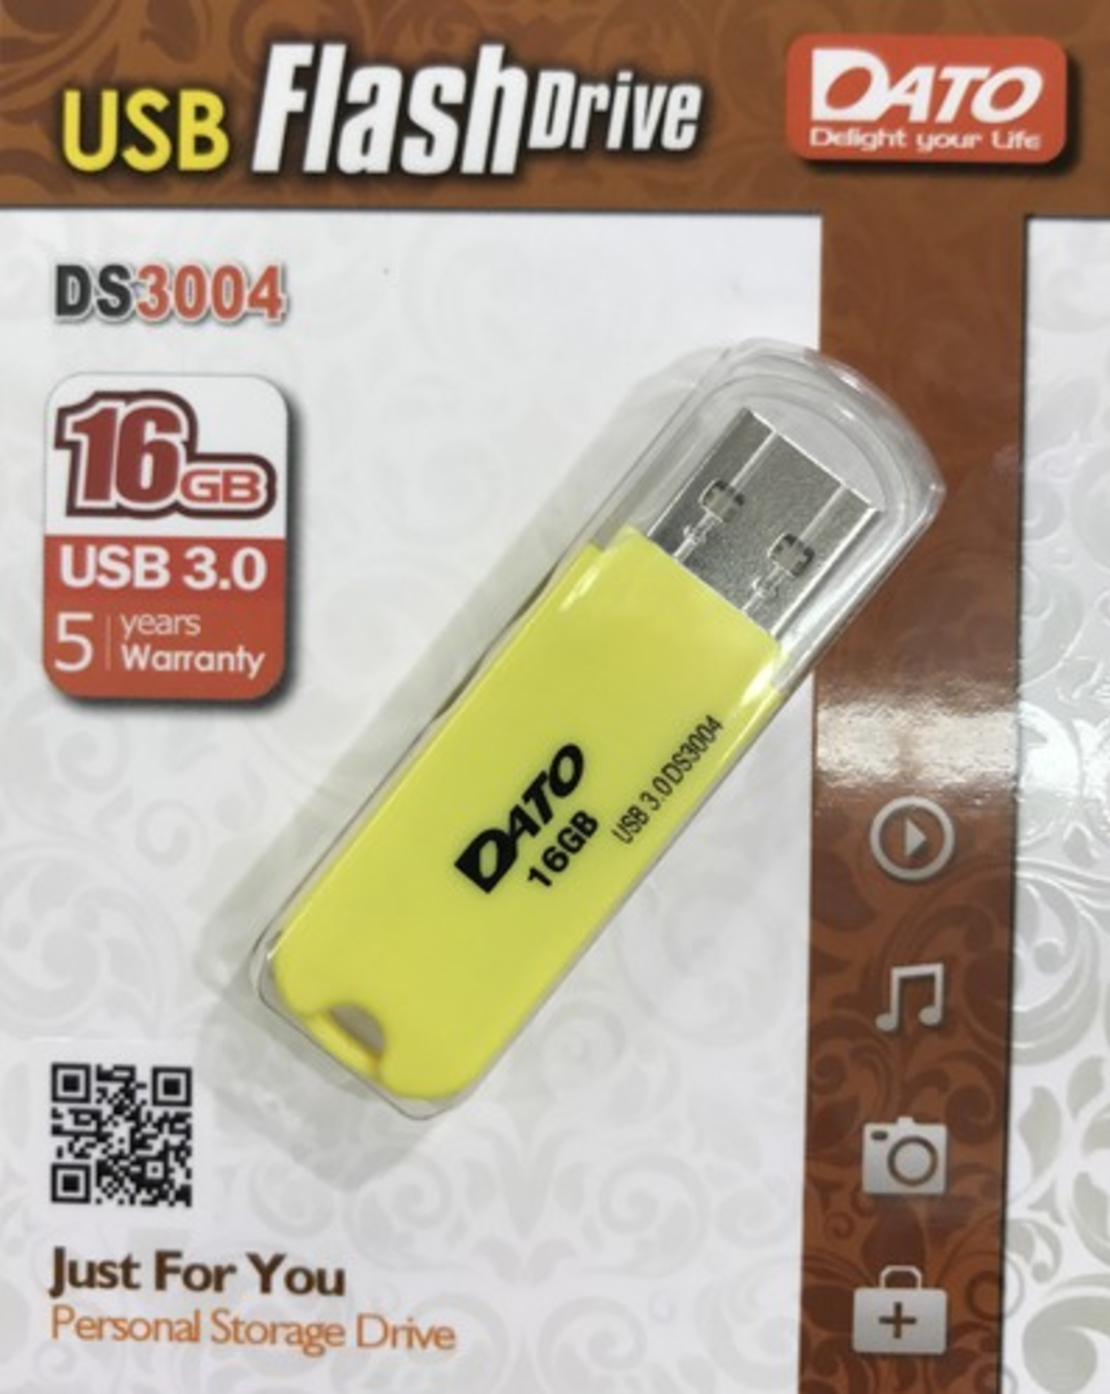 דיסק און קי DATO USB 3.0 16GB DS3004